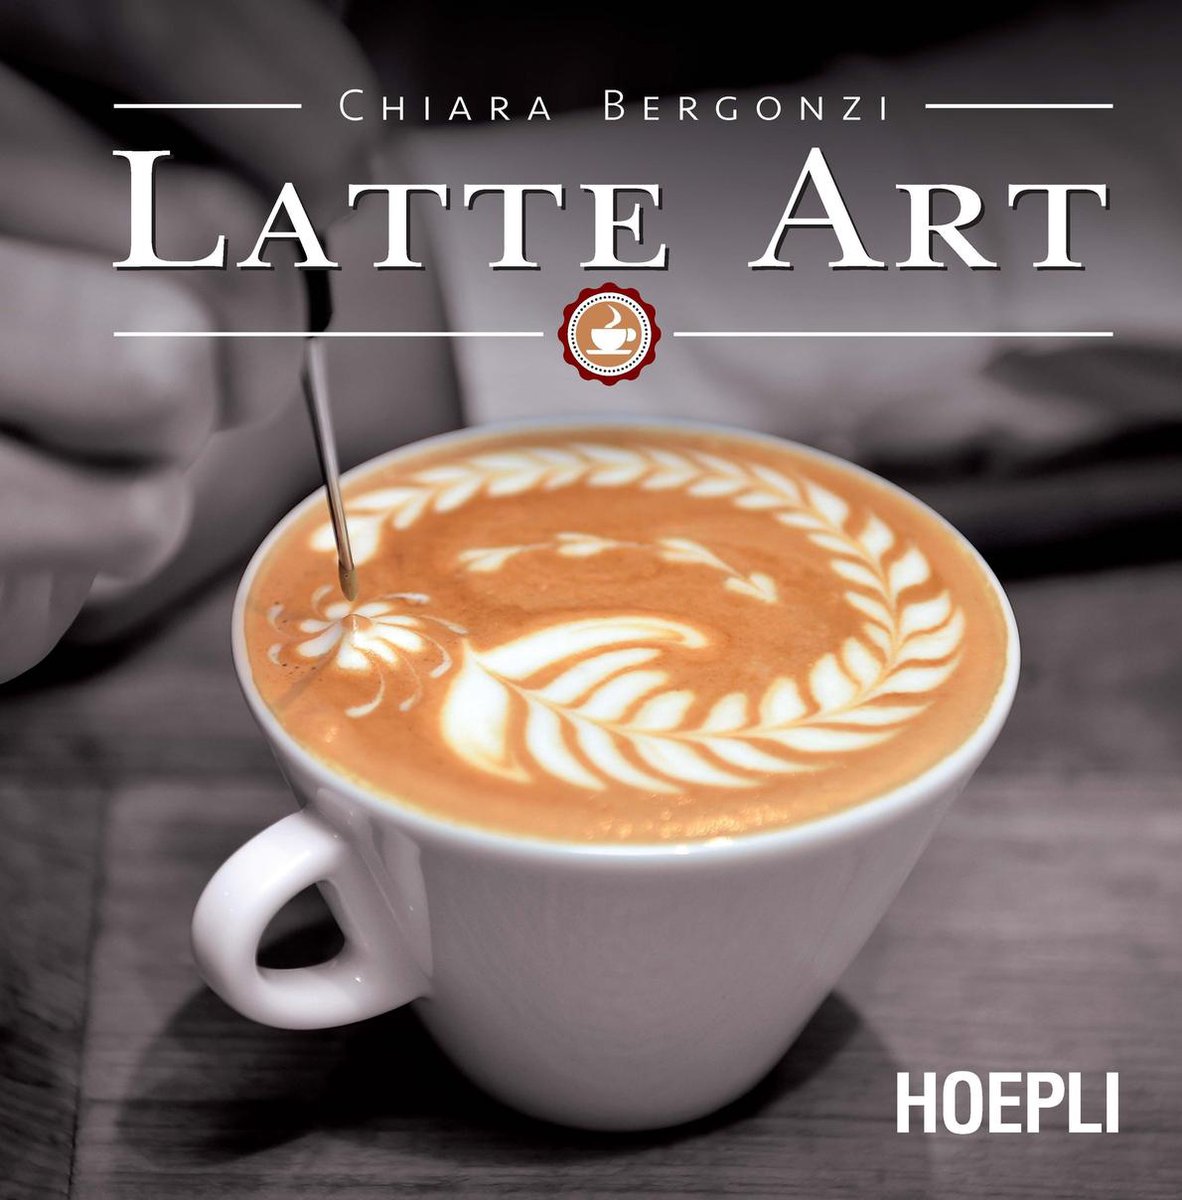 Latte art adalah